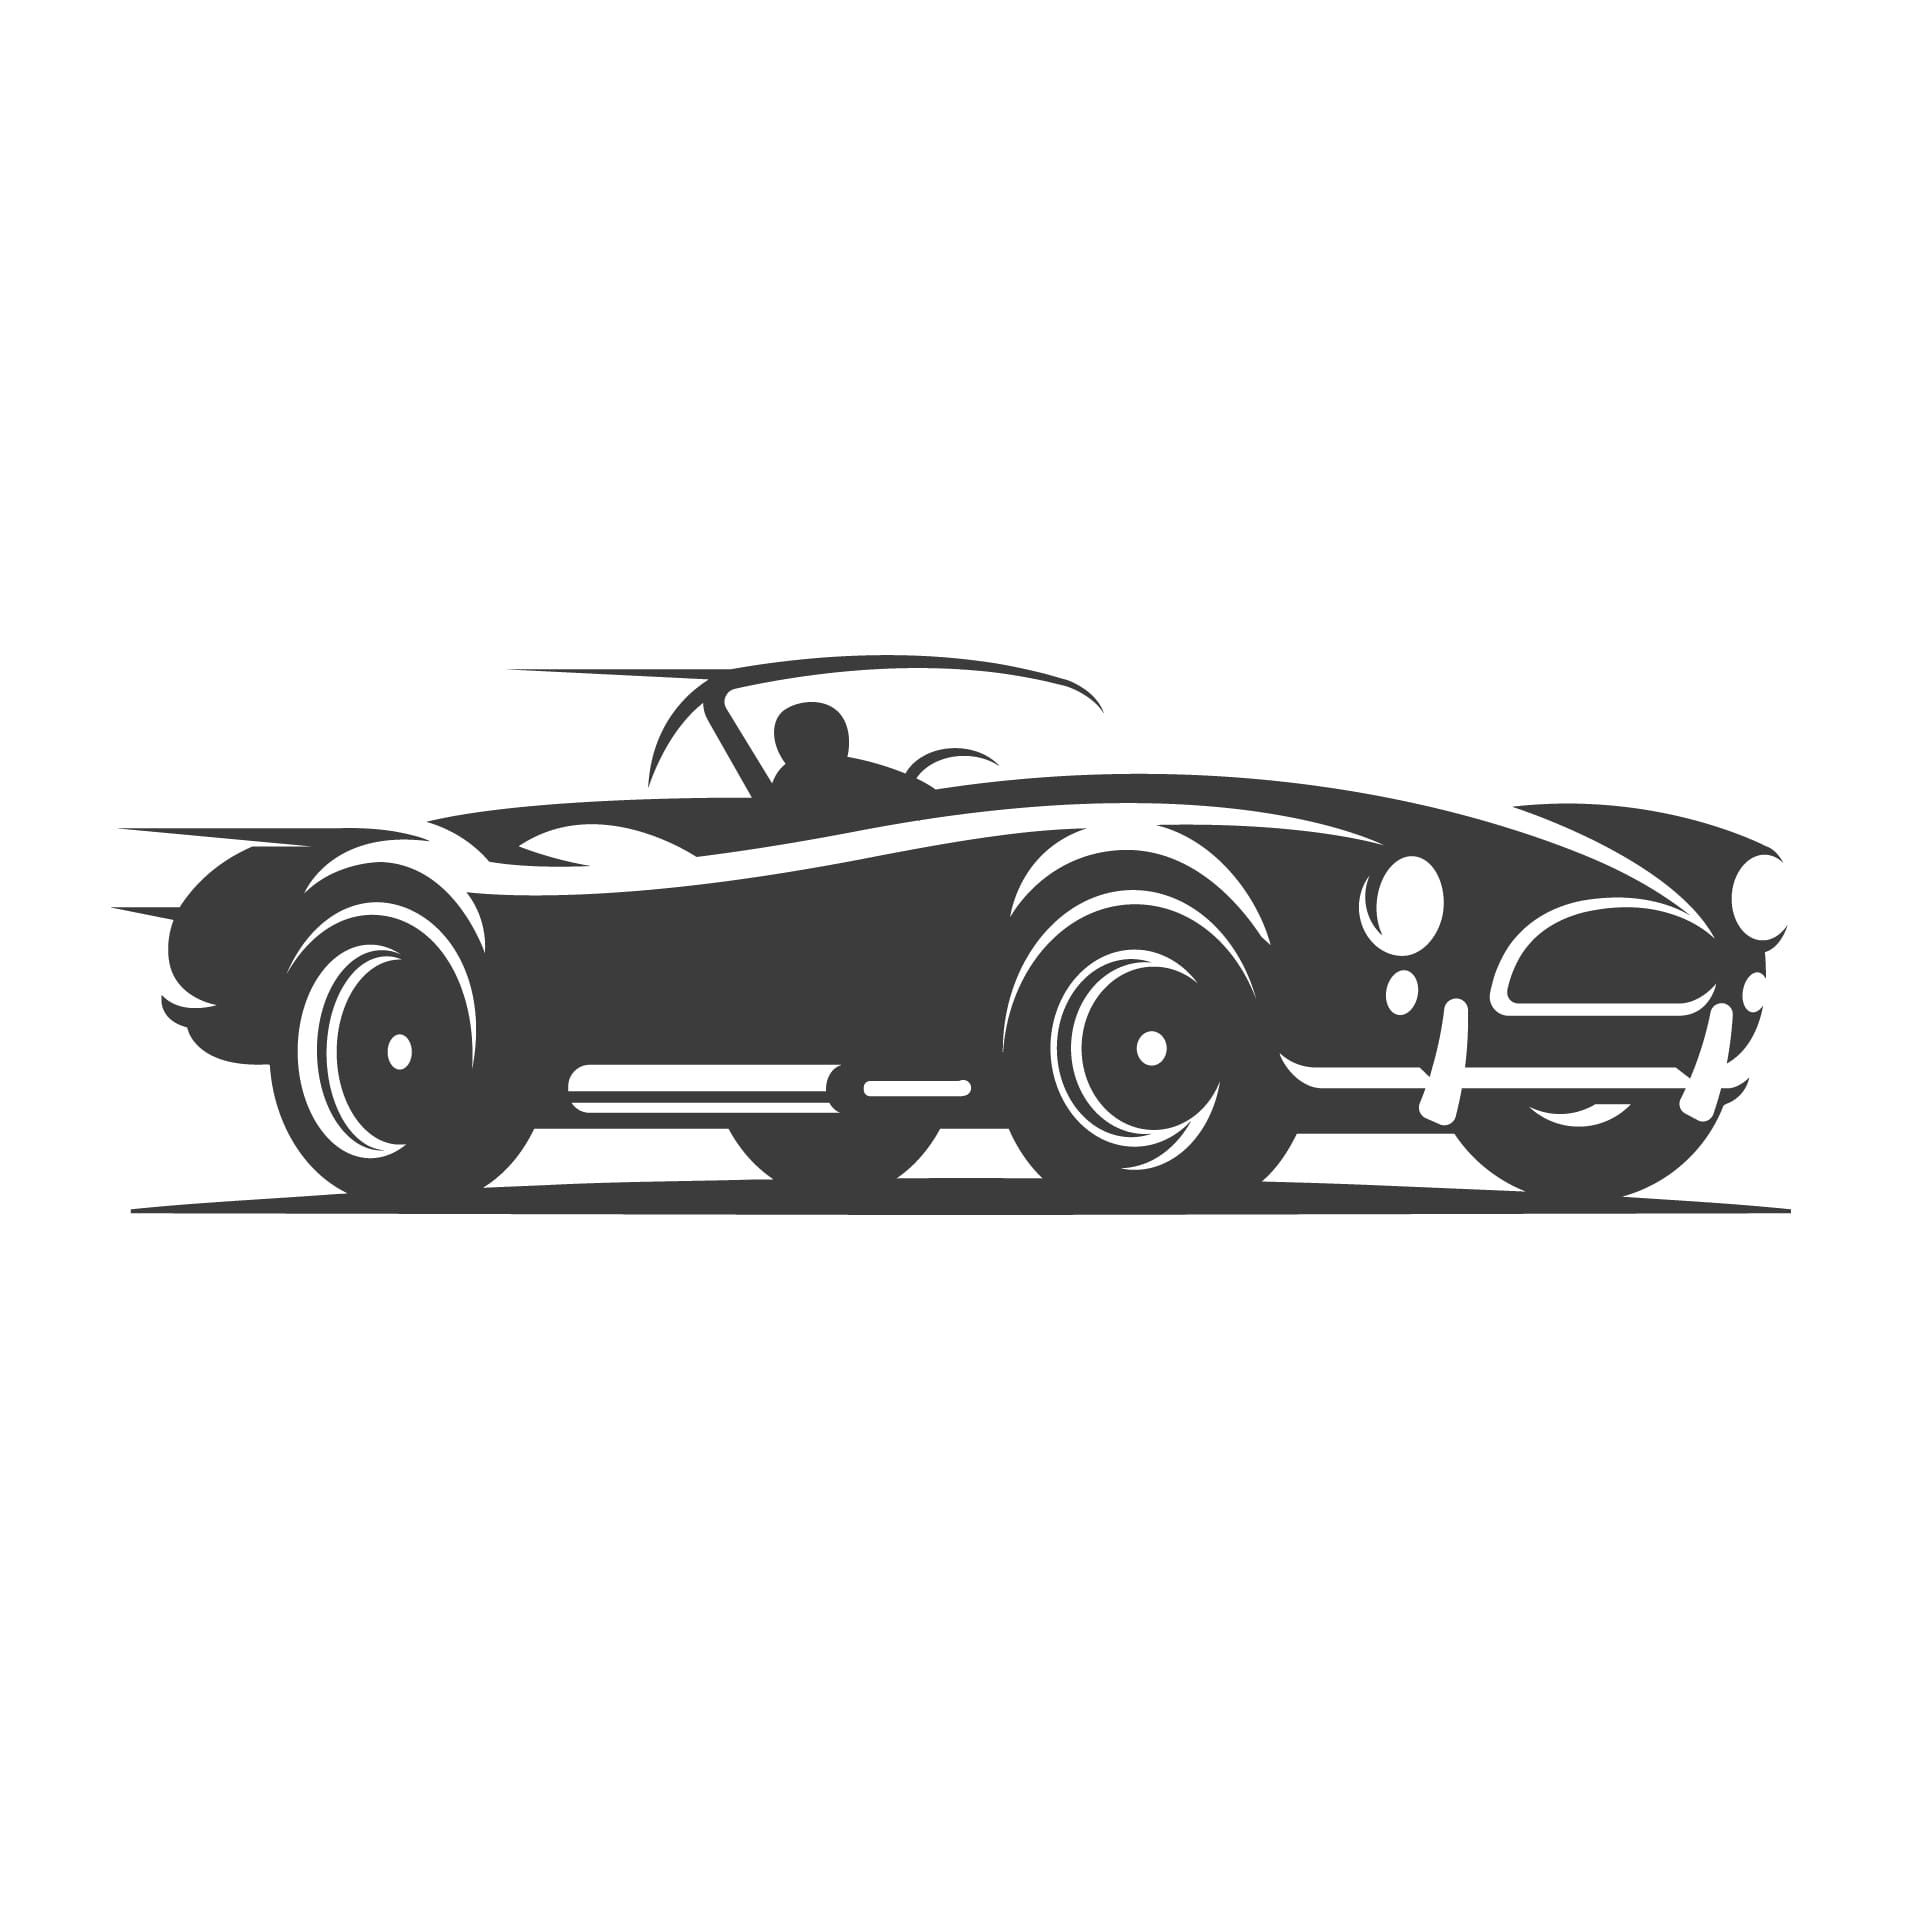 Retro car roadster illustration picture car profile picture